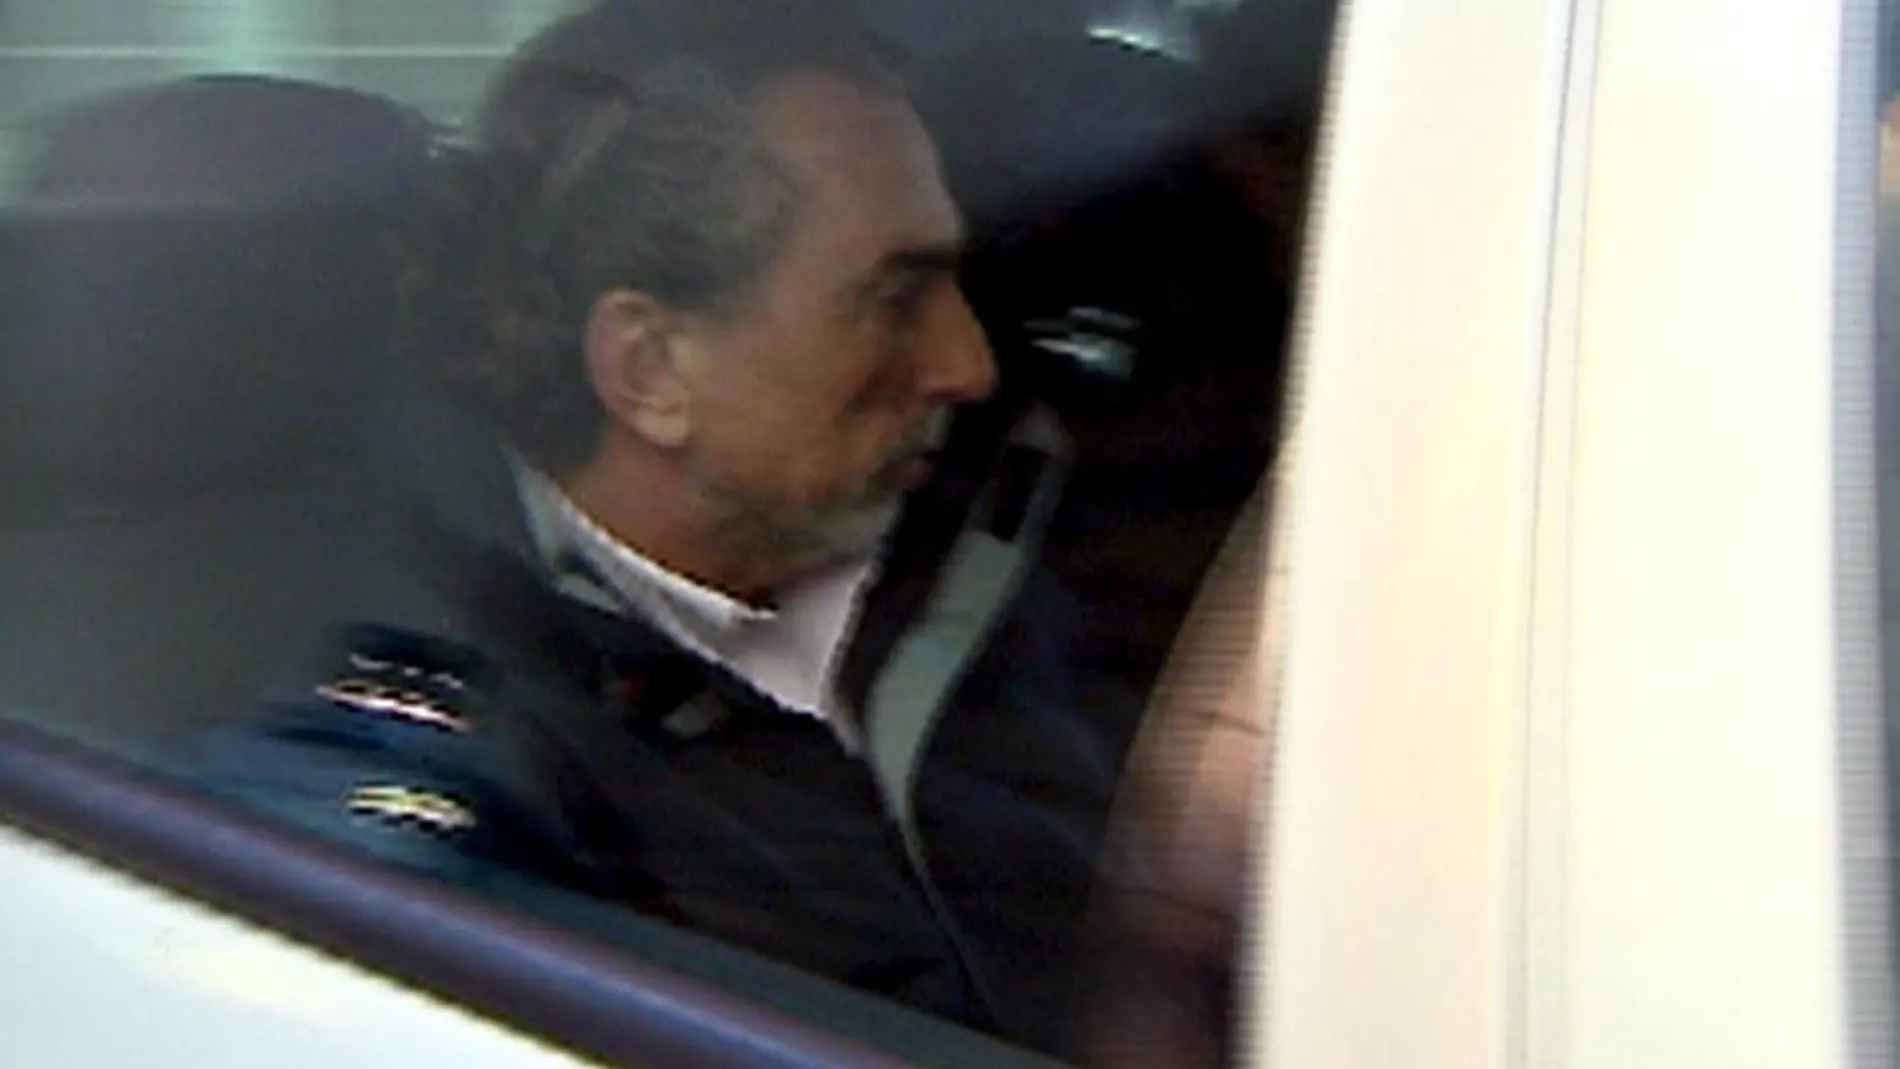 Imagen captada de Efe TV del presunto cabecilla de la trama "Gürtel", Francisco Correa, en uno de sus traslados